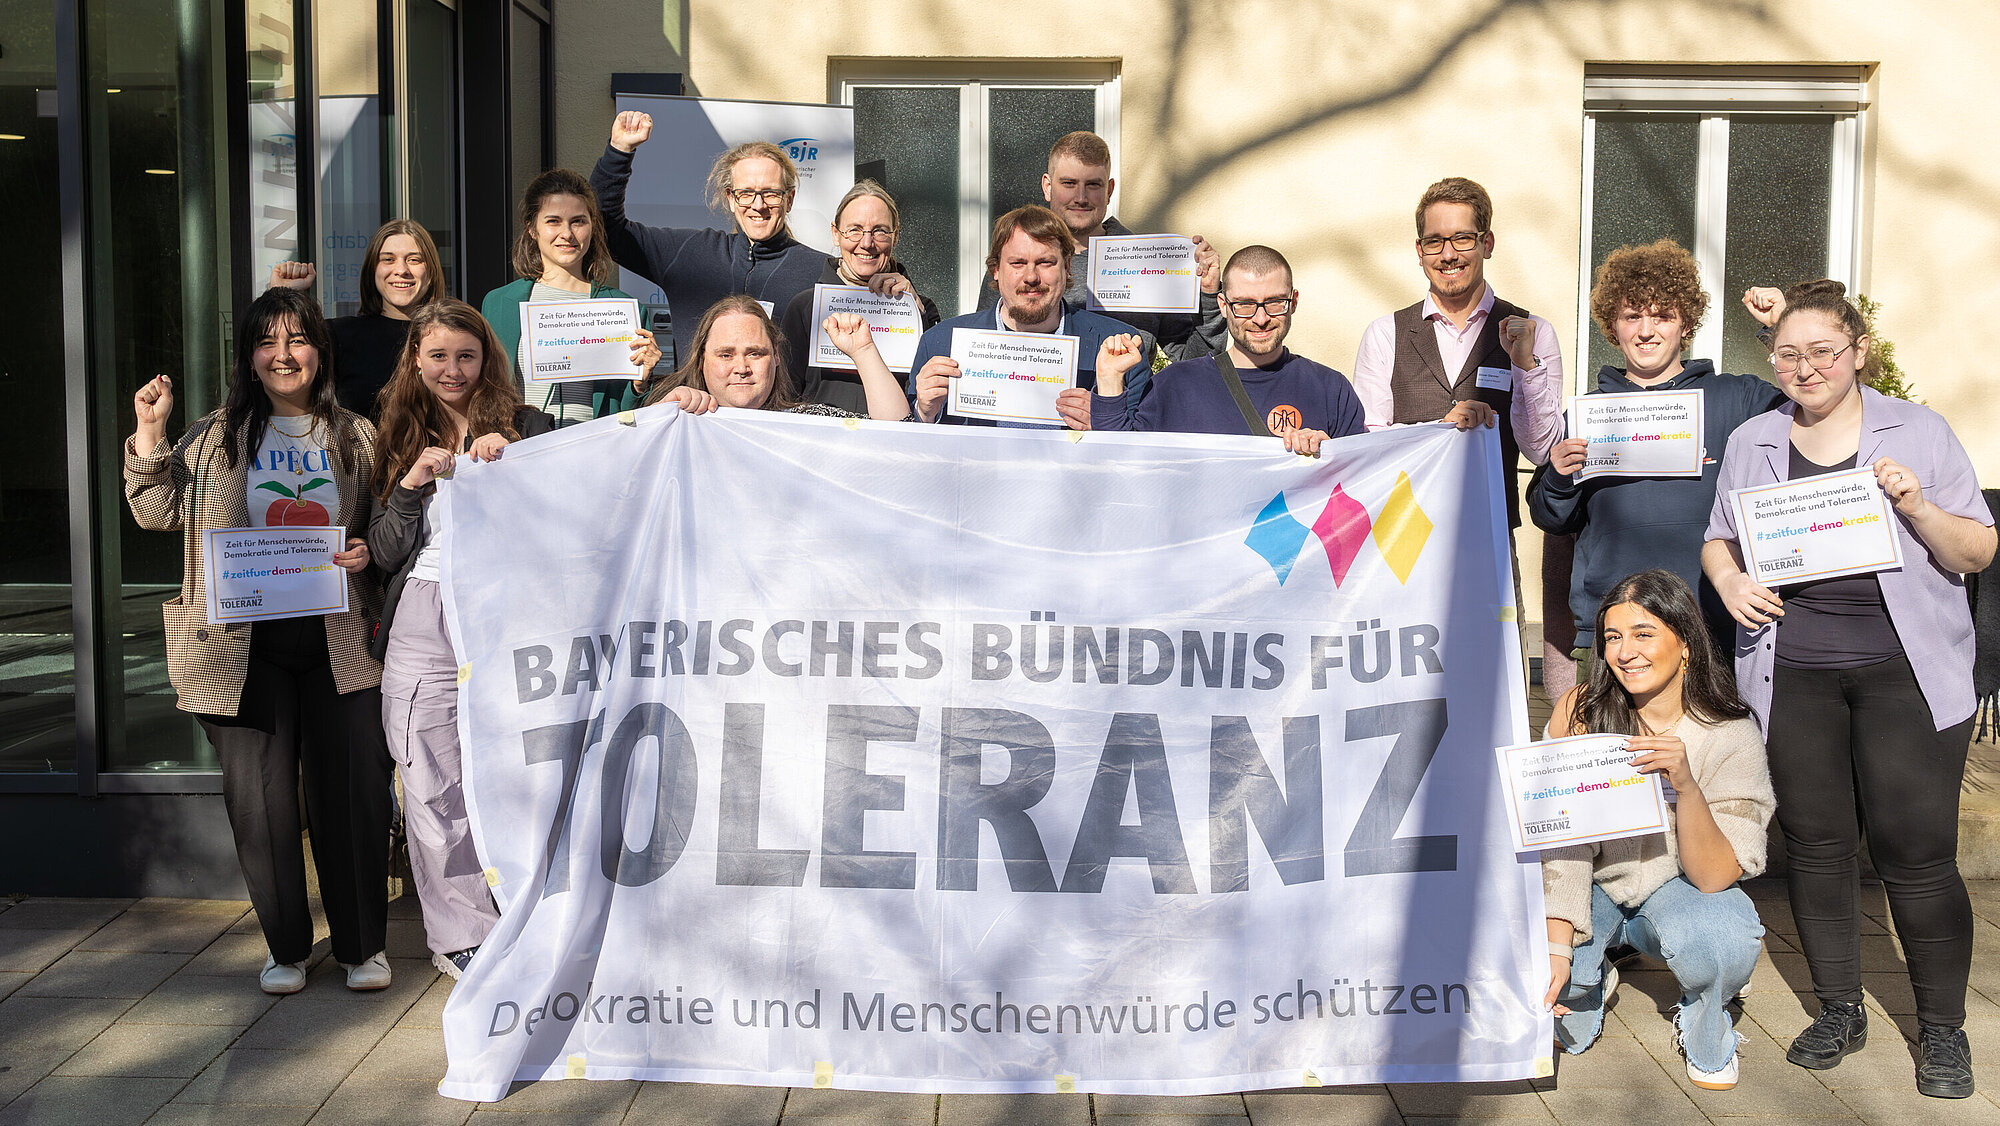 Gruppenbild für das Bayerische Bündnis für Toleranz